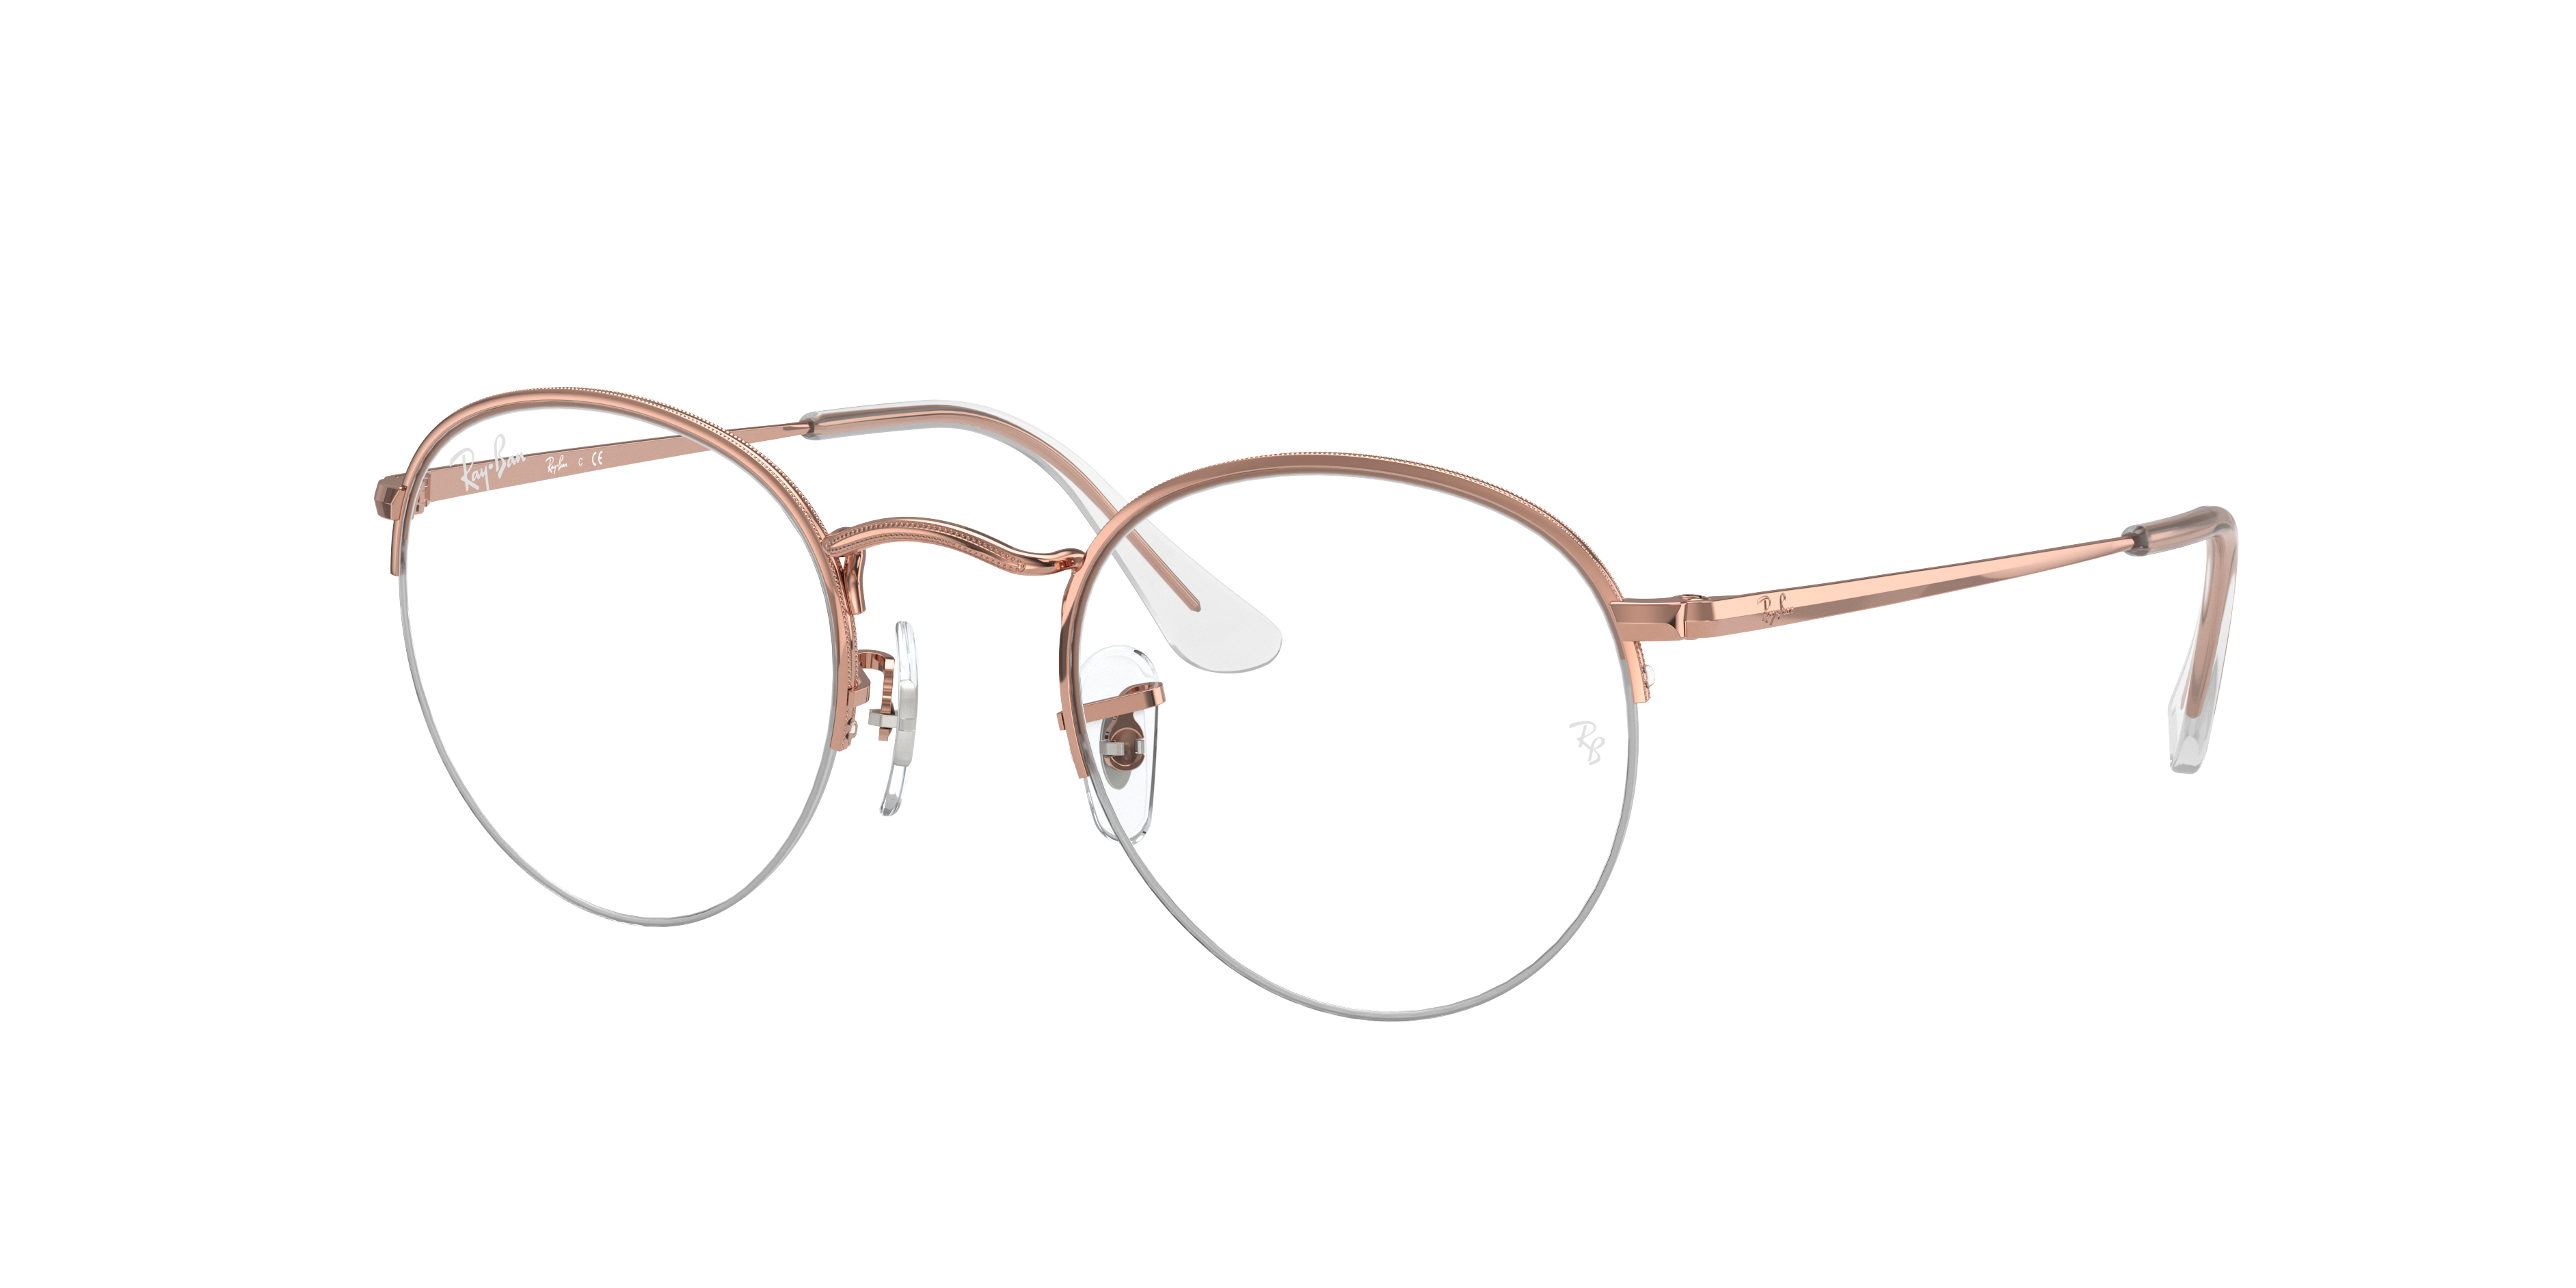 Round Gaze Eyeglasses with Shiny Rose Gold Frame | Ray-Ban®